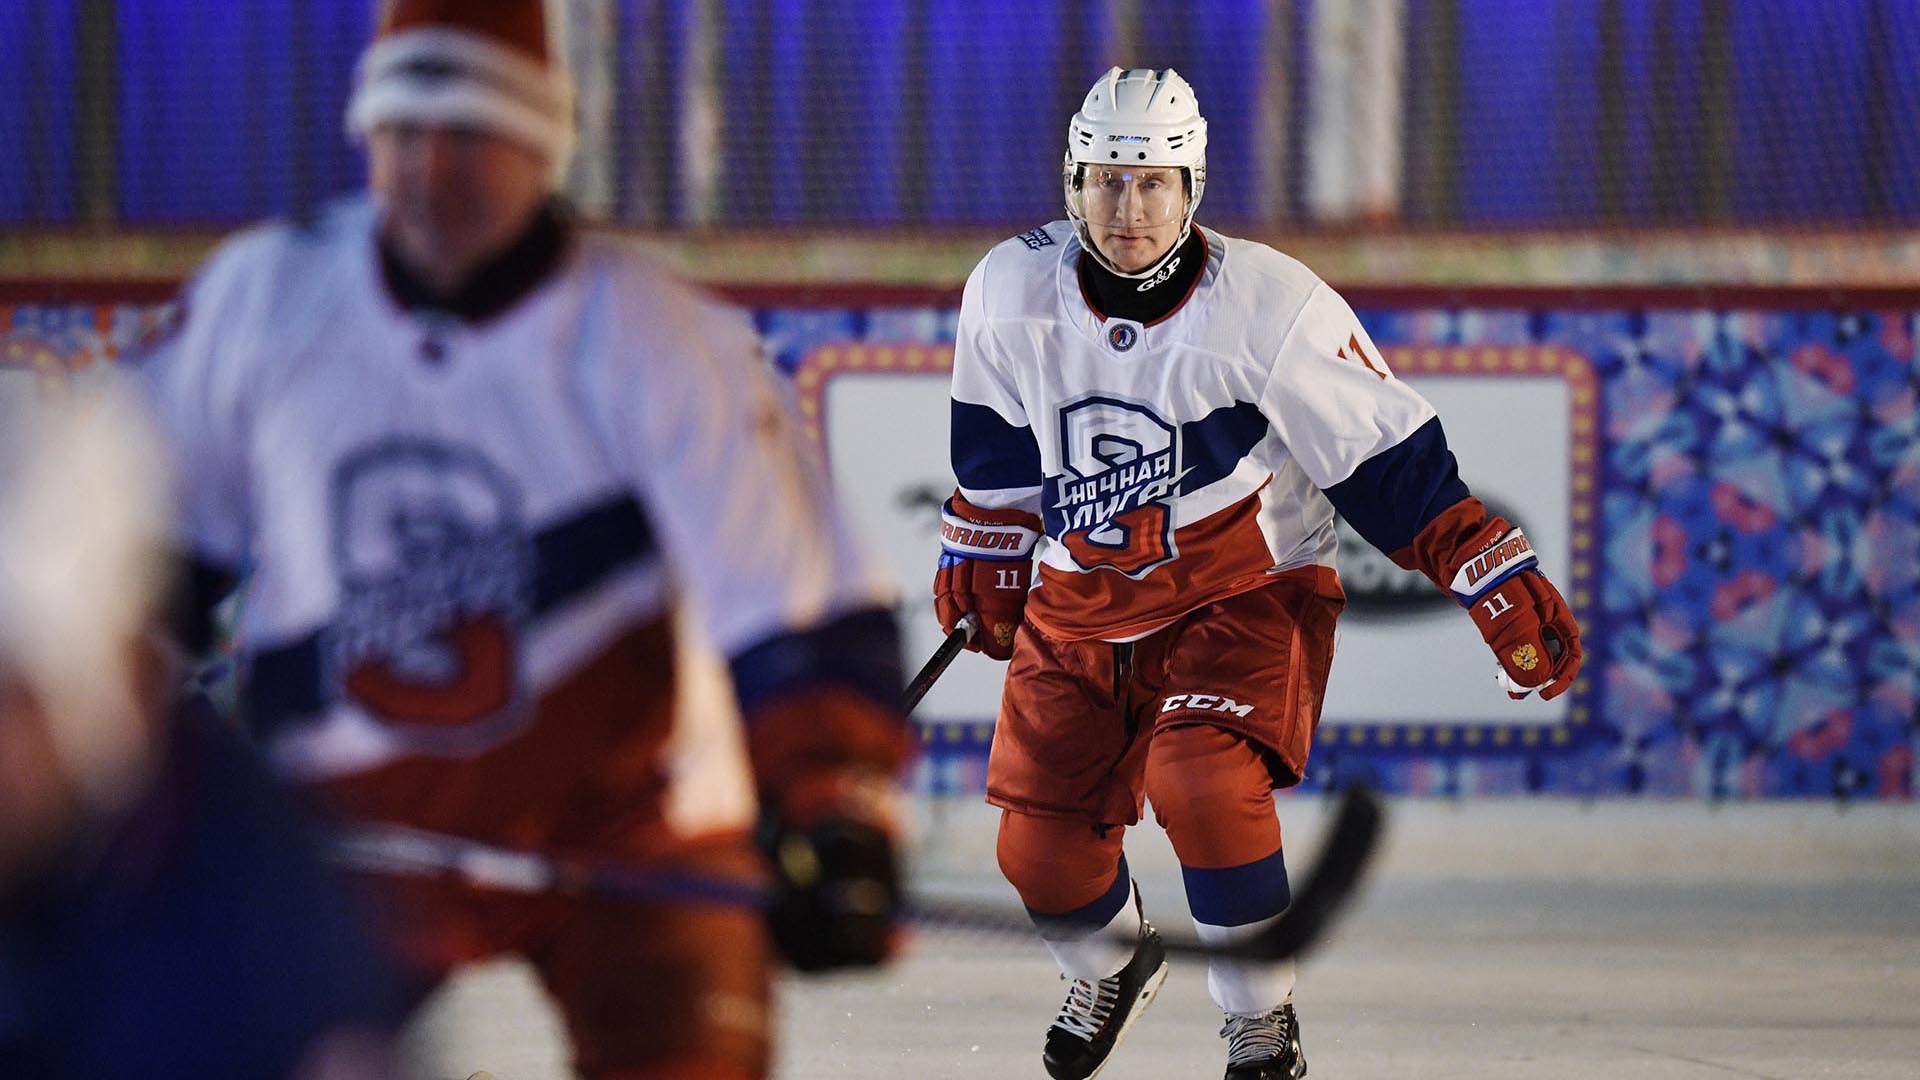 El presidente Vladimir Putin jugando al hockey sobre hielo (REUTERS)